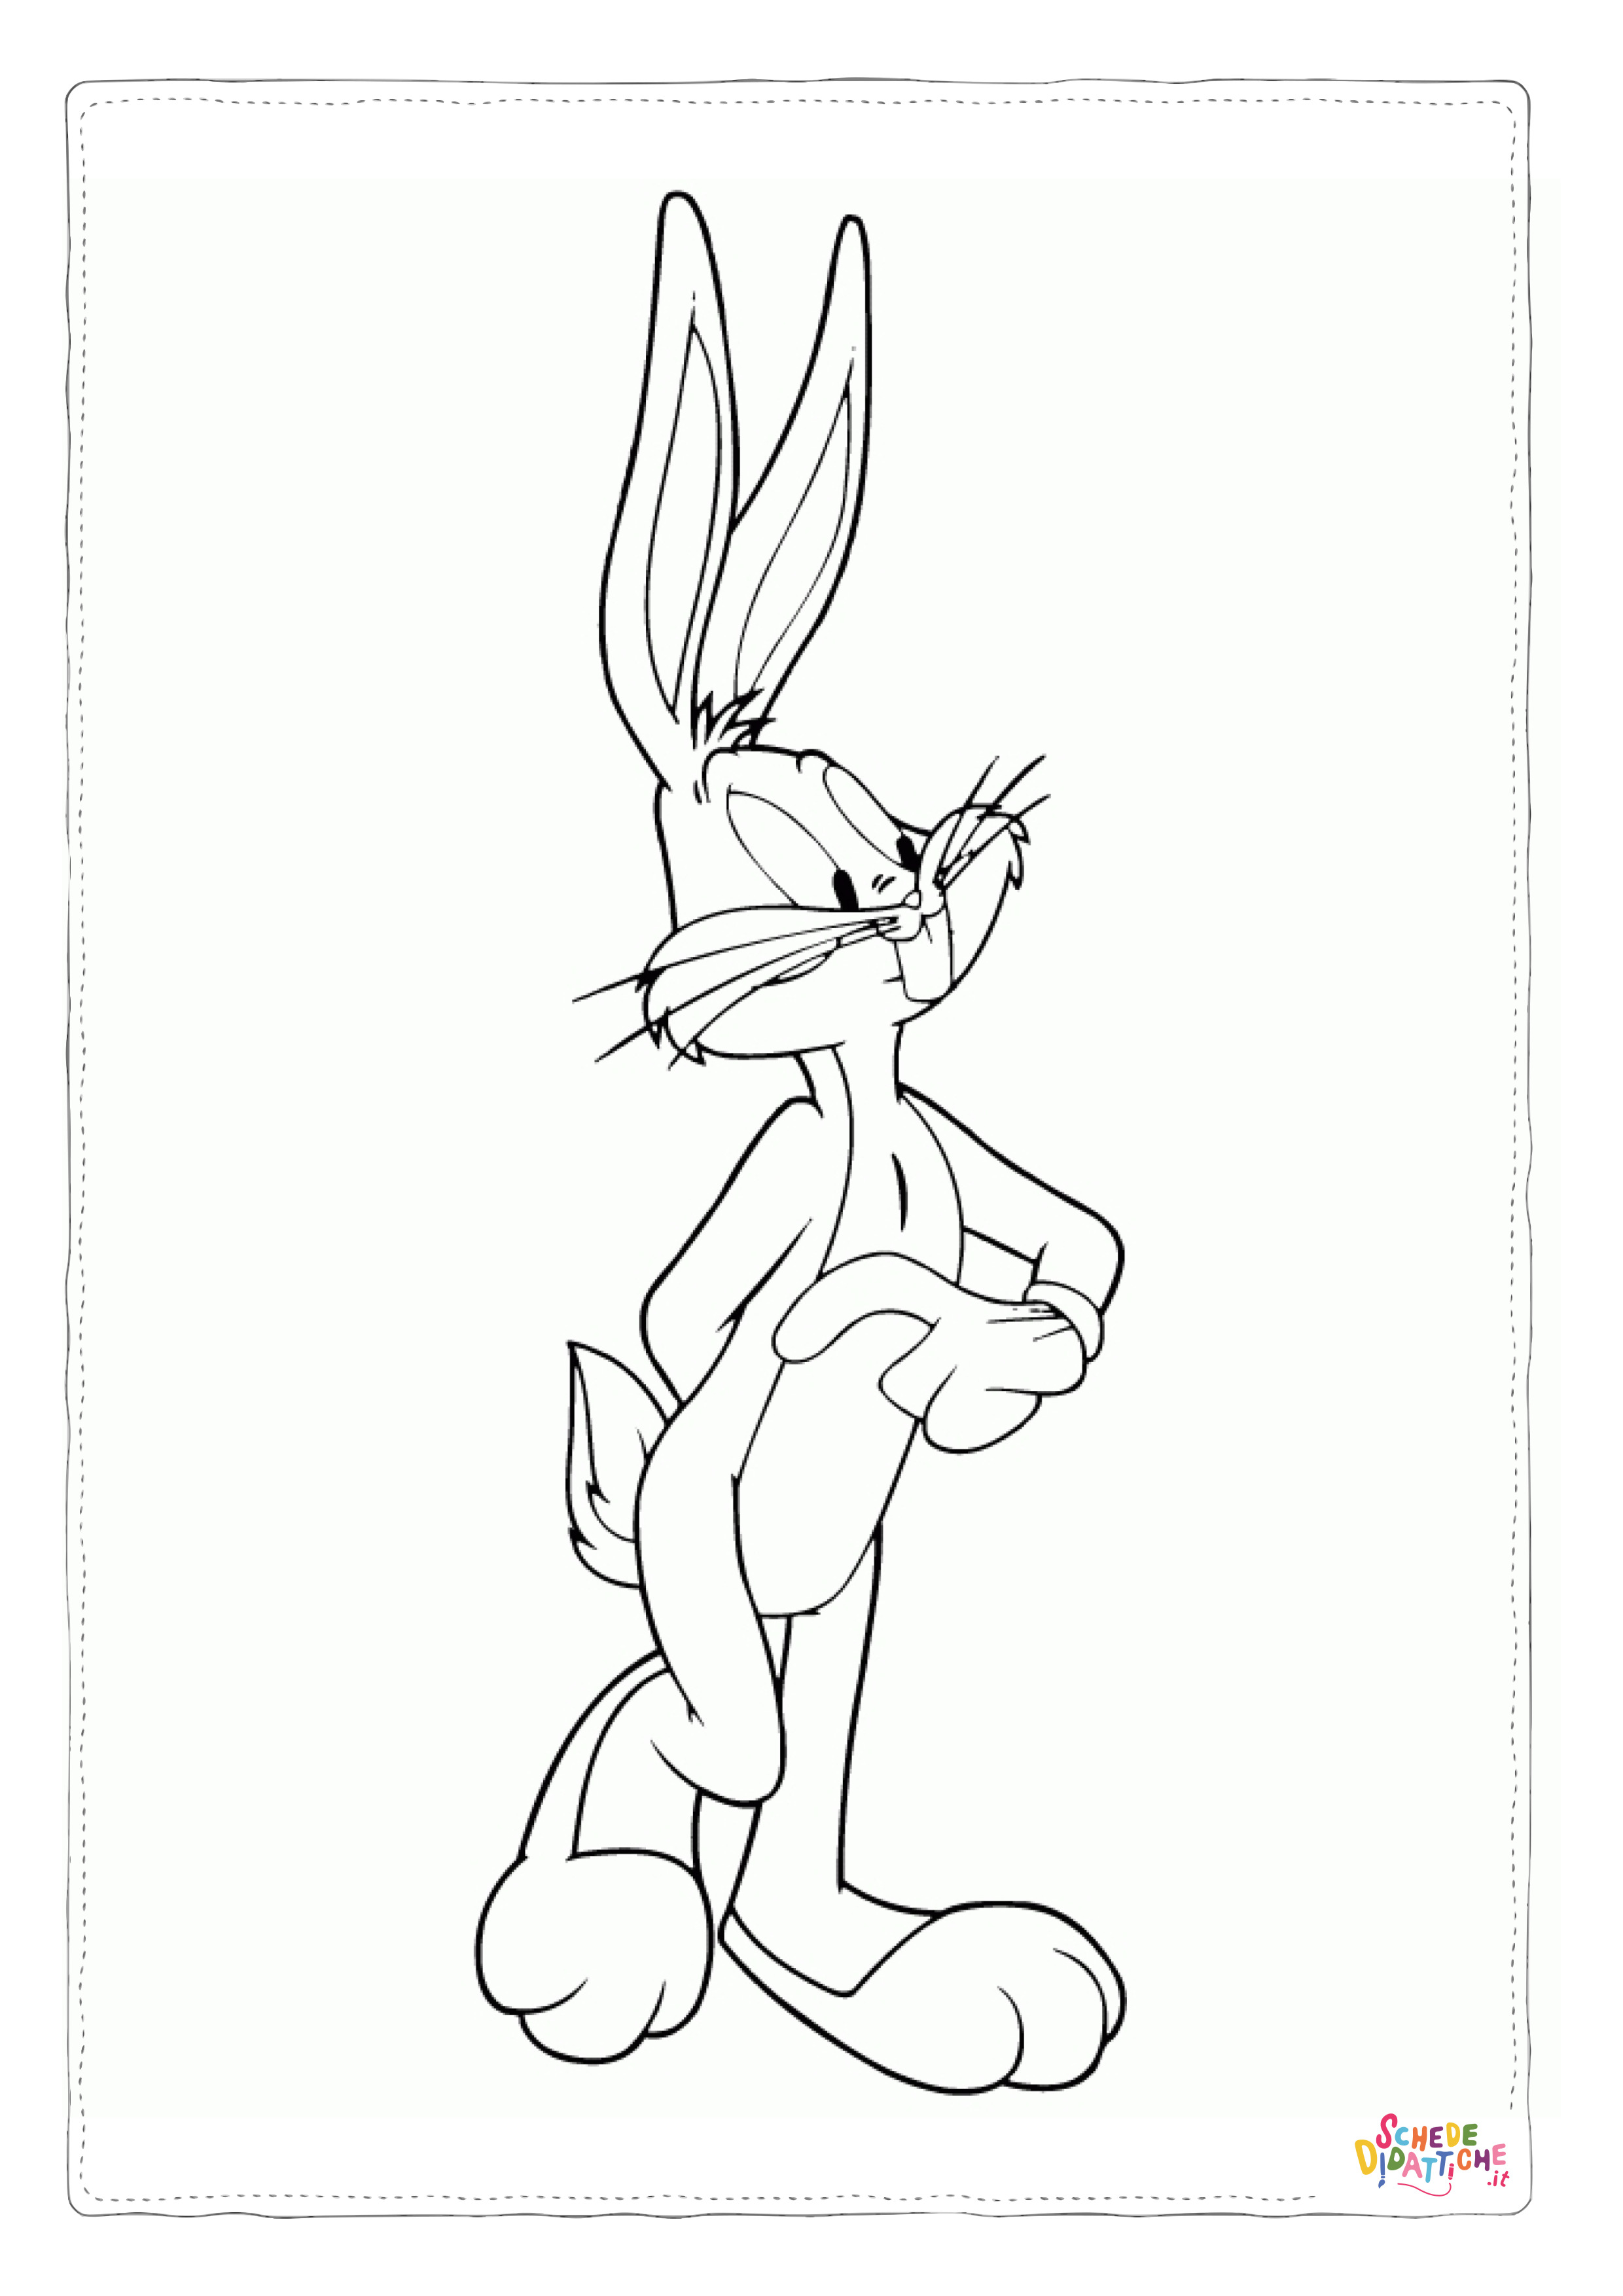 Disegno di Bugs Bunny da stampare e colorare 1